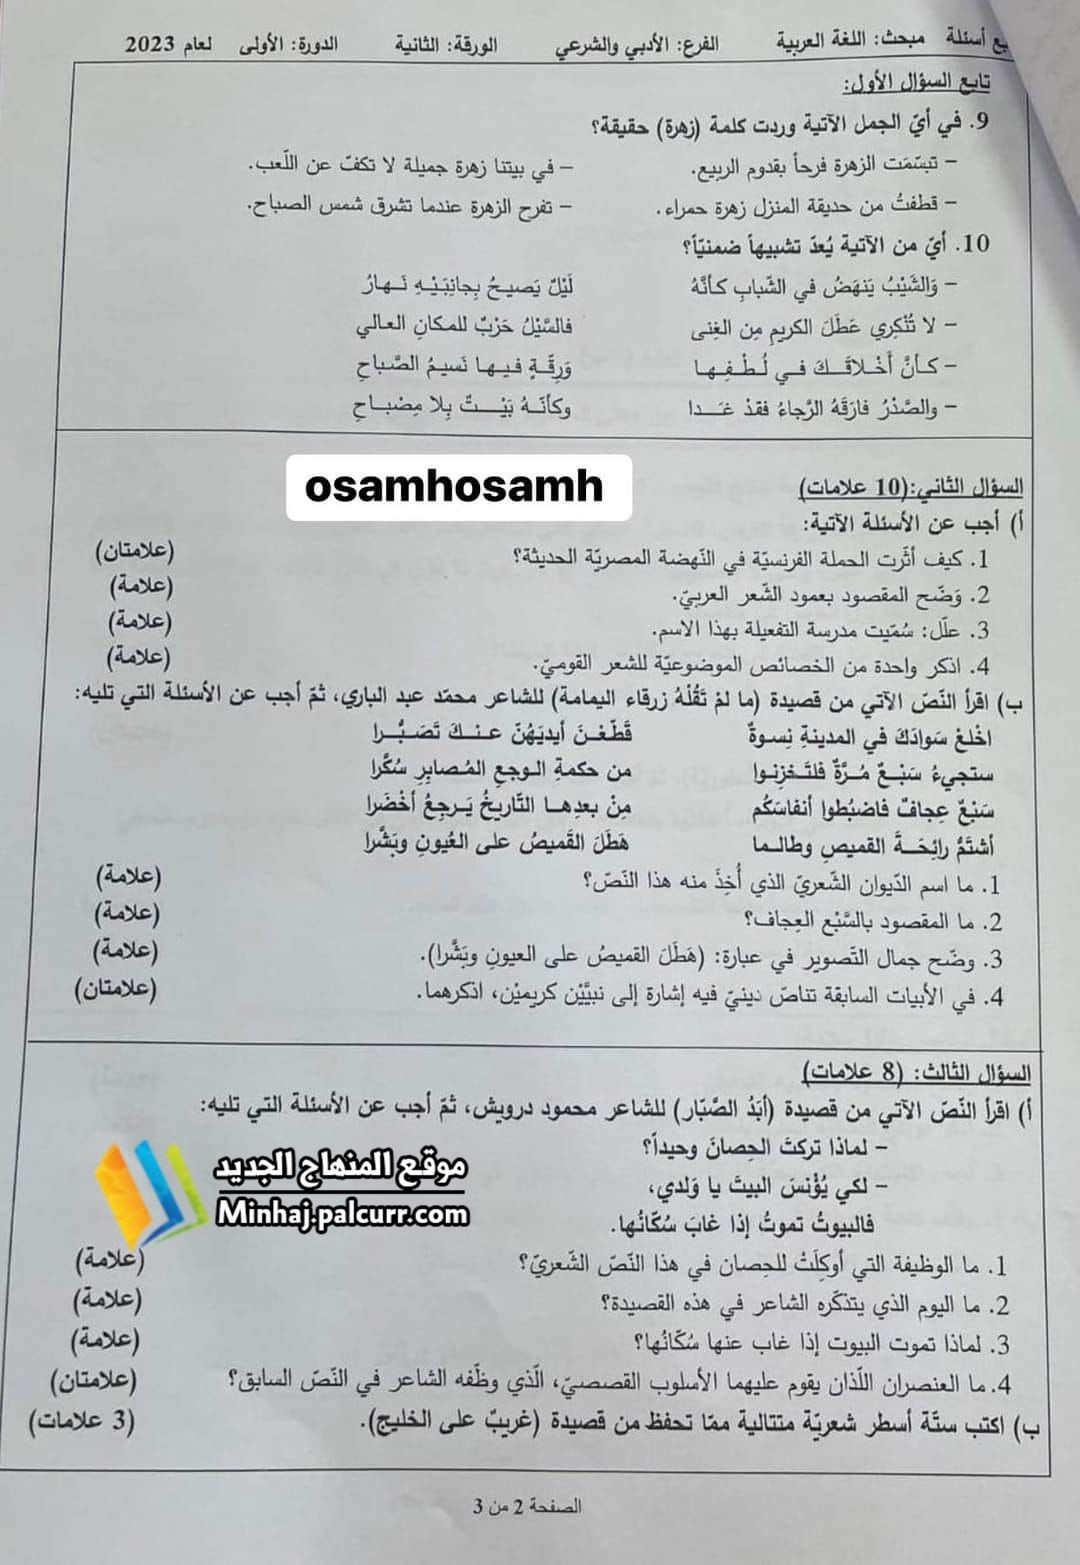 4 حل إجابات أسئلة امتحان اللغة العربية الورقة الثانية 2023 – توجيهي فلسطين 2023.jpg